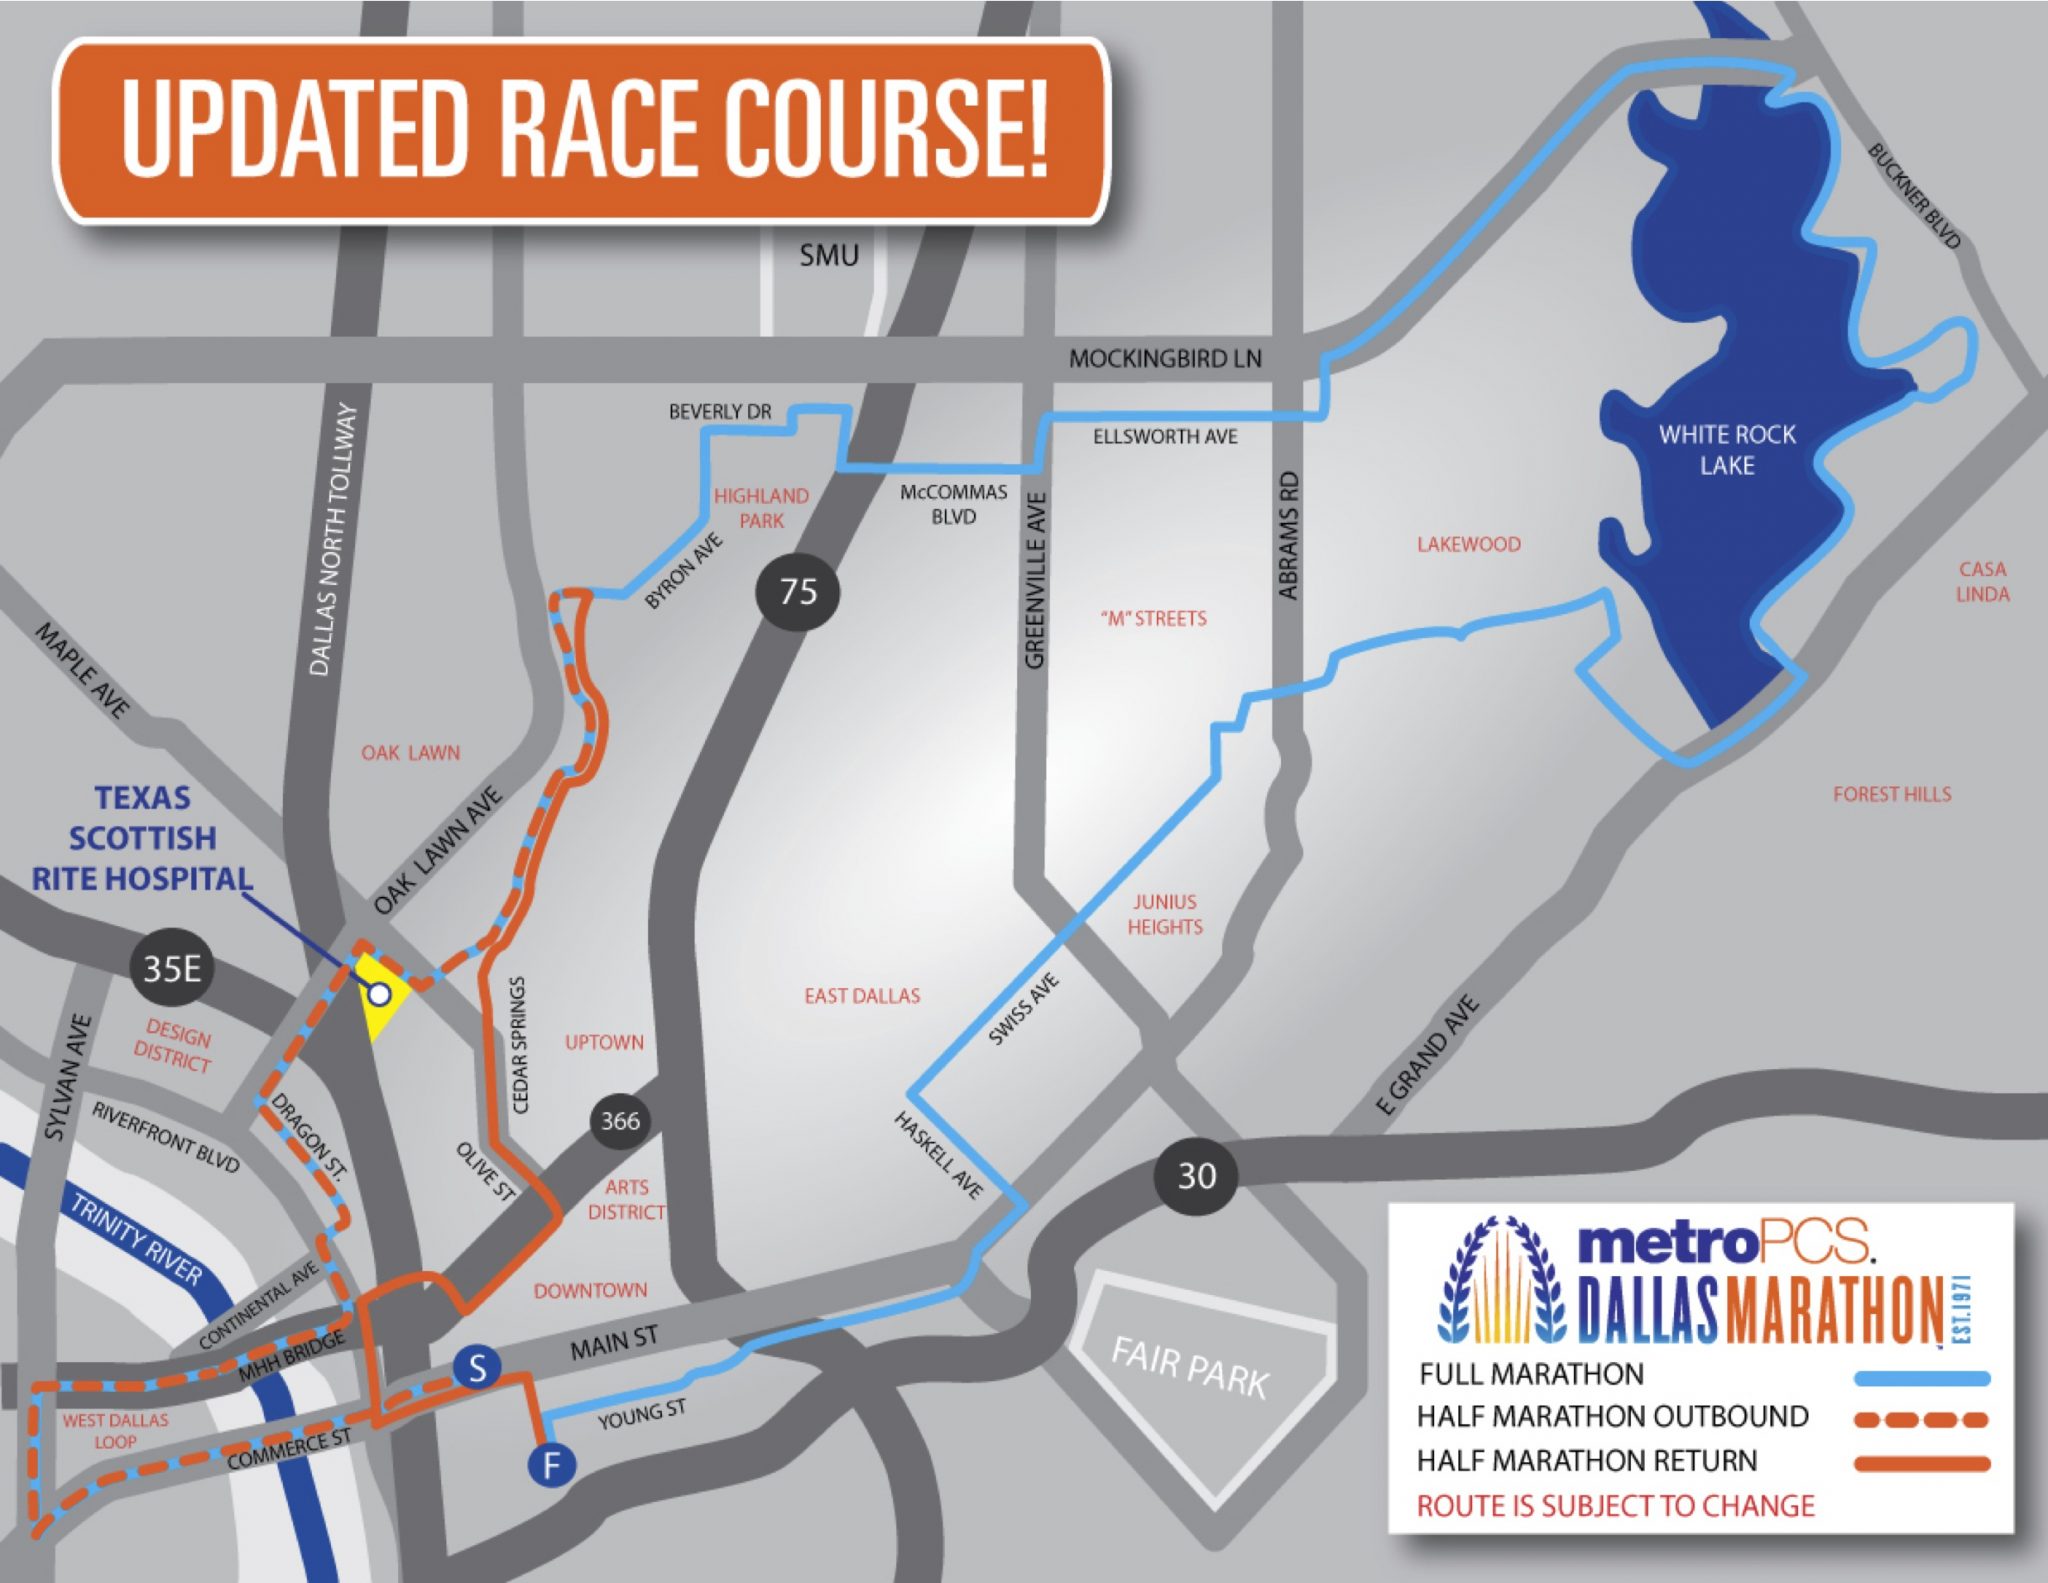 Dallas Marathon announces final course changes Lakewood/East Dallas